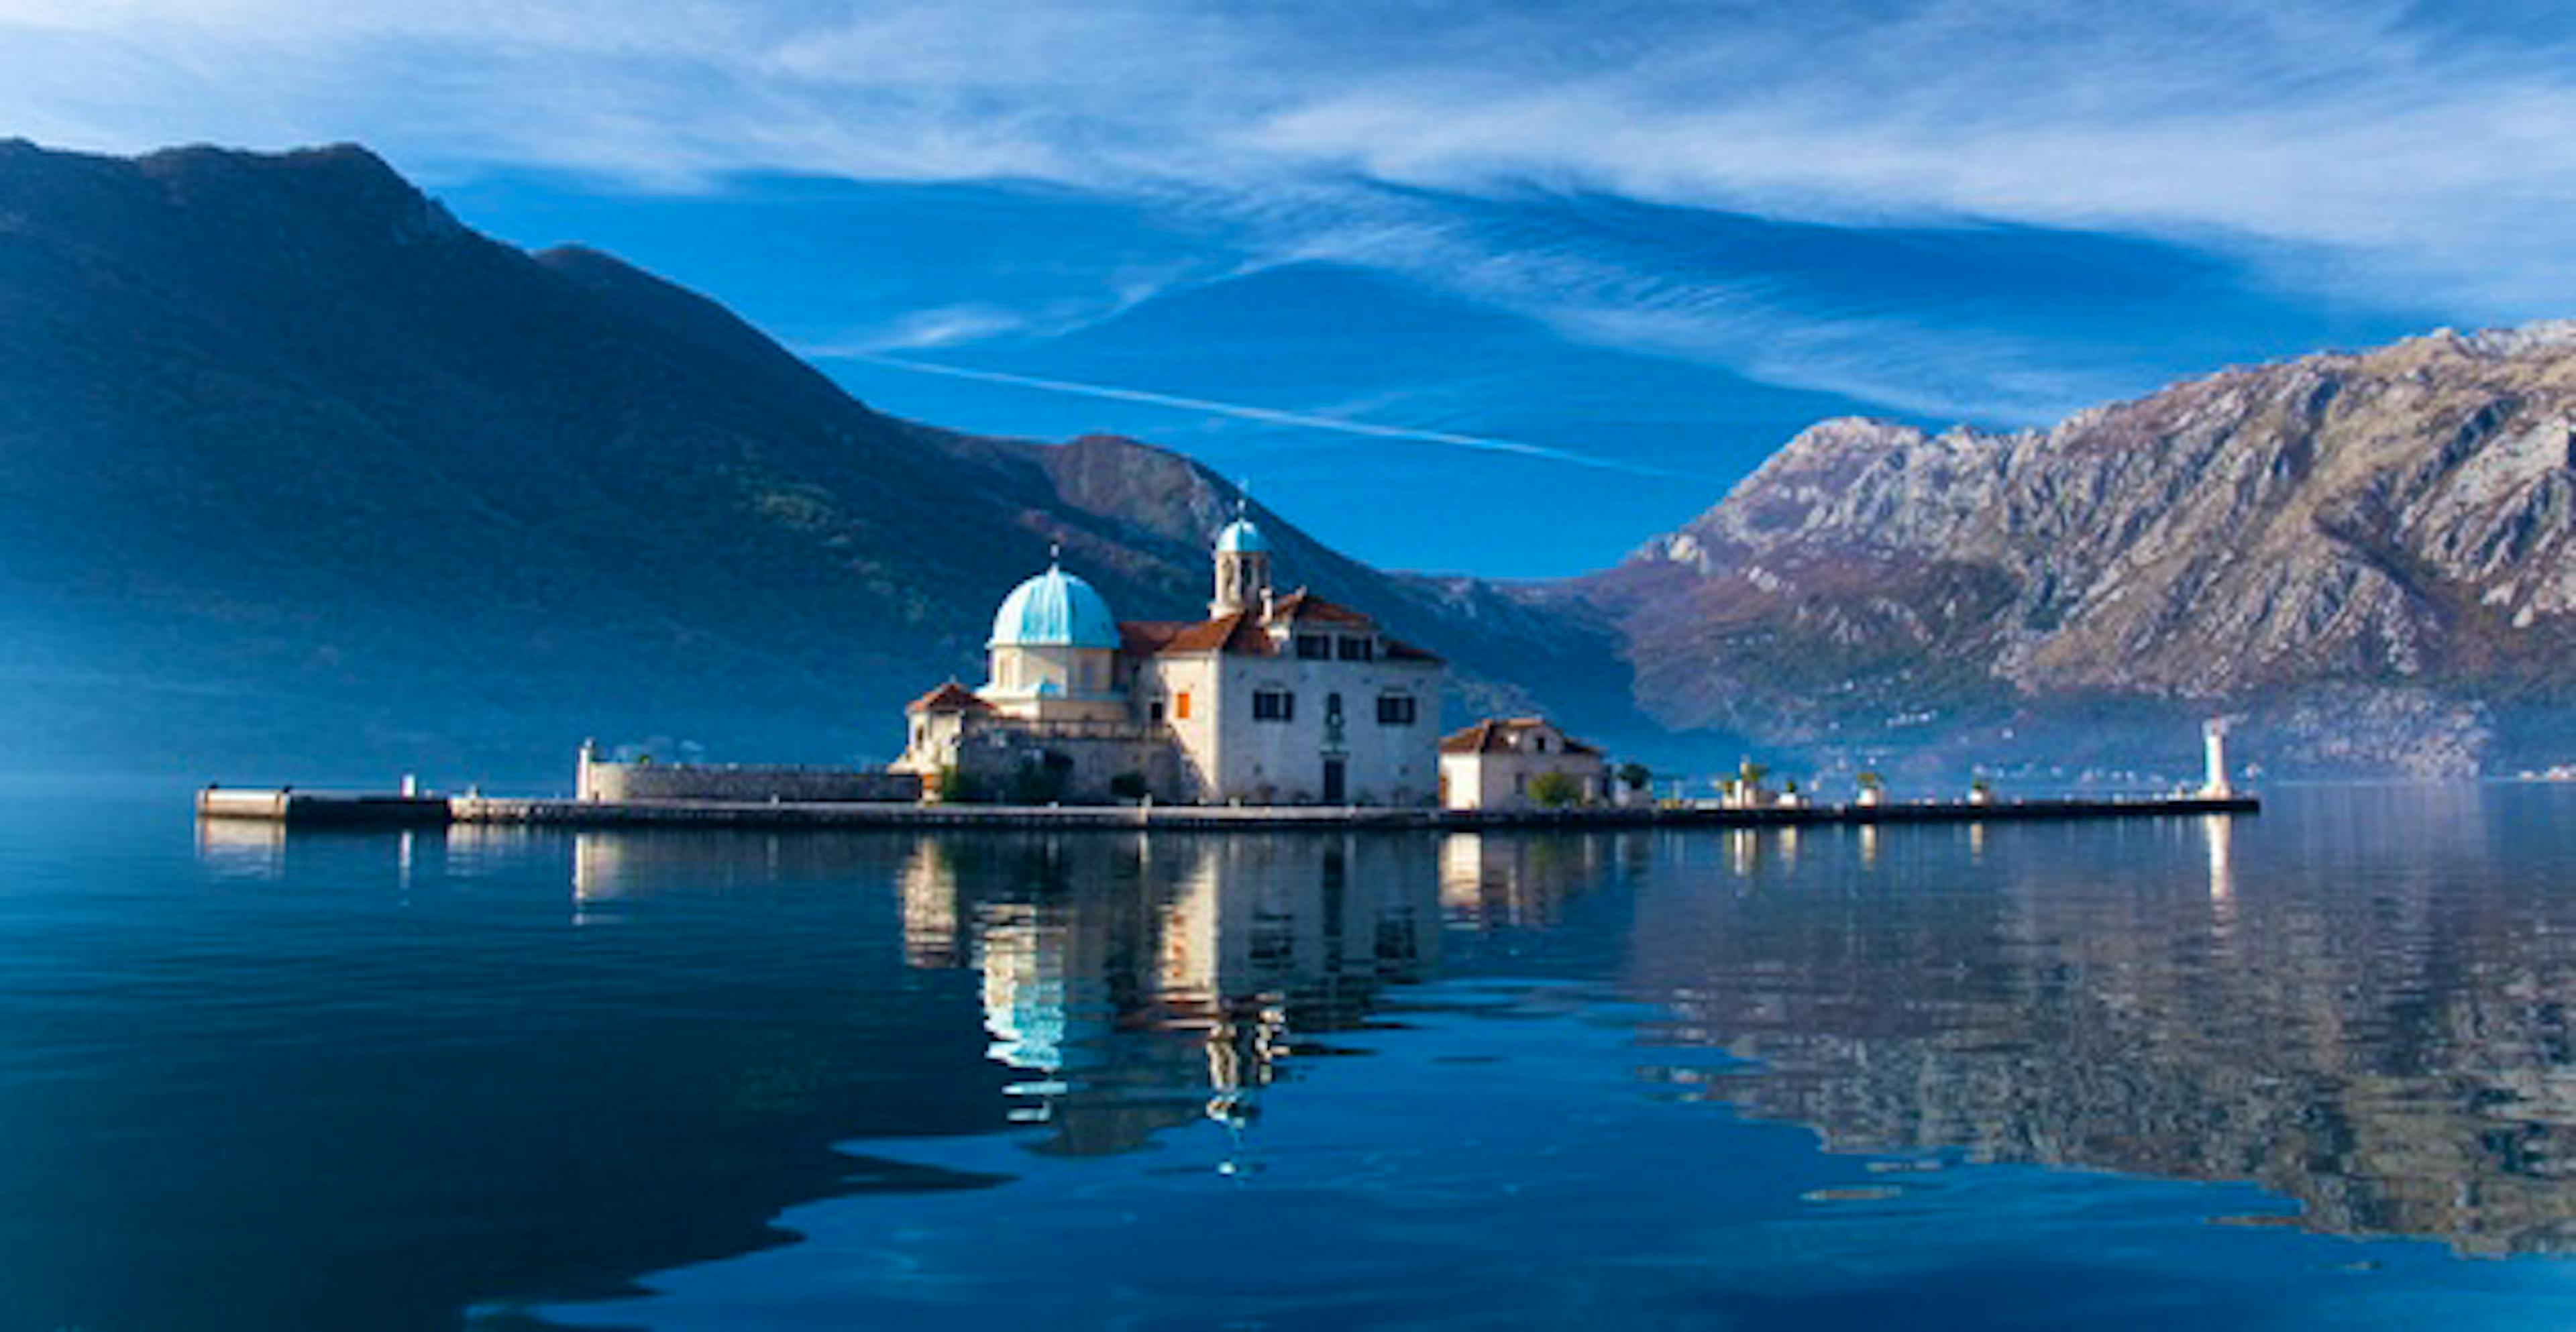 Kotor: the hidden gem of Montenegro